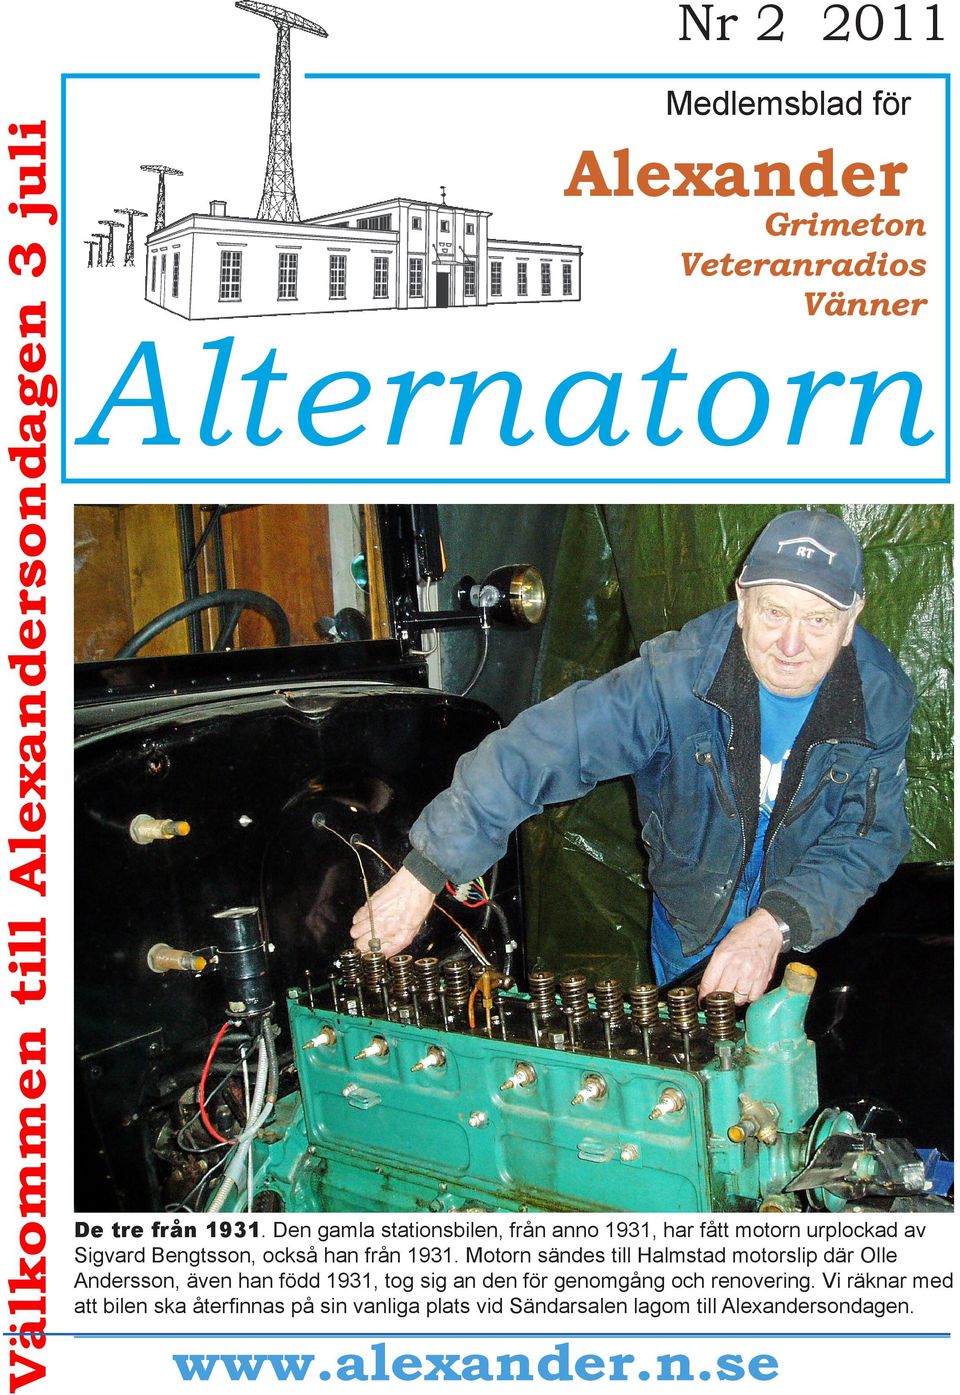 Motorn sändes till Halmstad motorslip där Olle Andersson, även han född 1931, tog sig an den för genomgång och renovering.